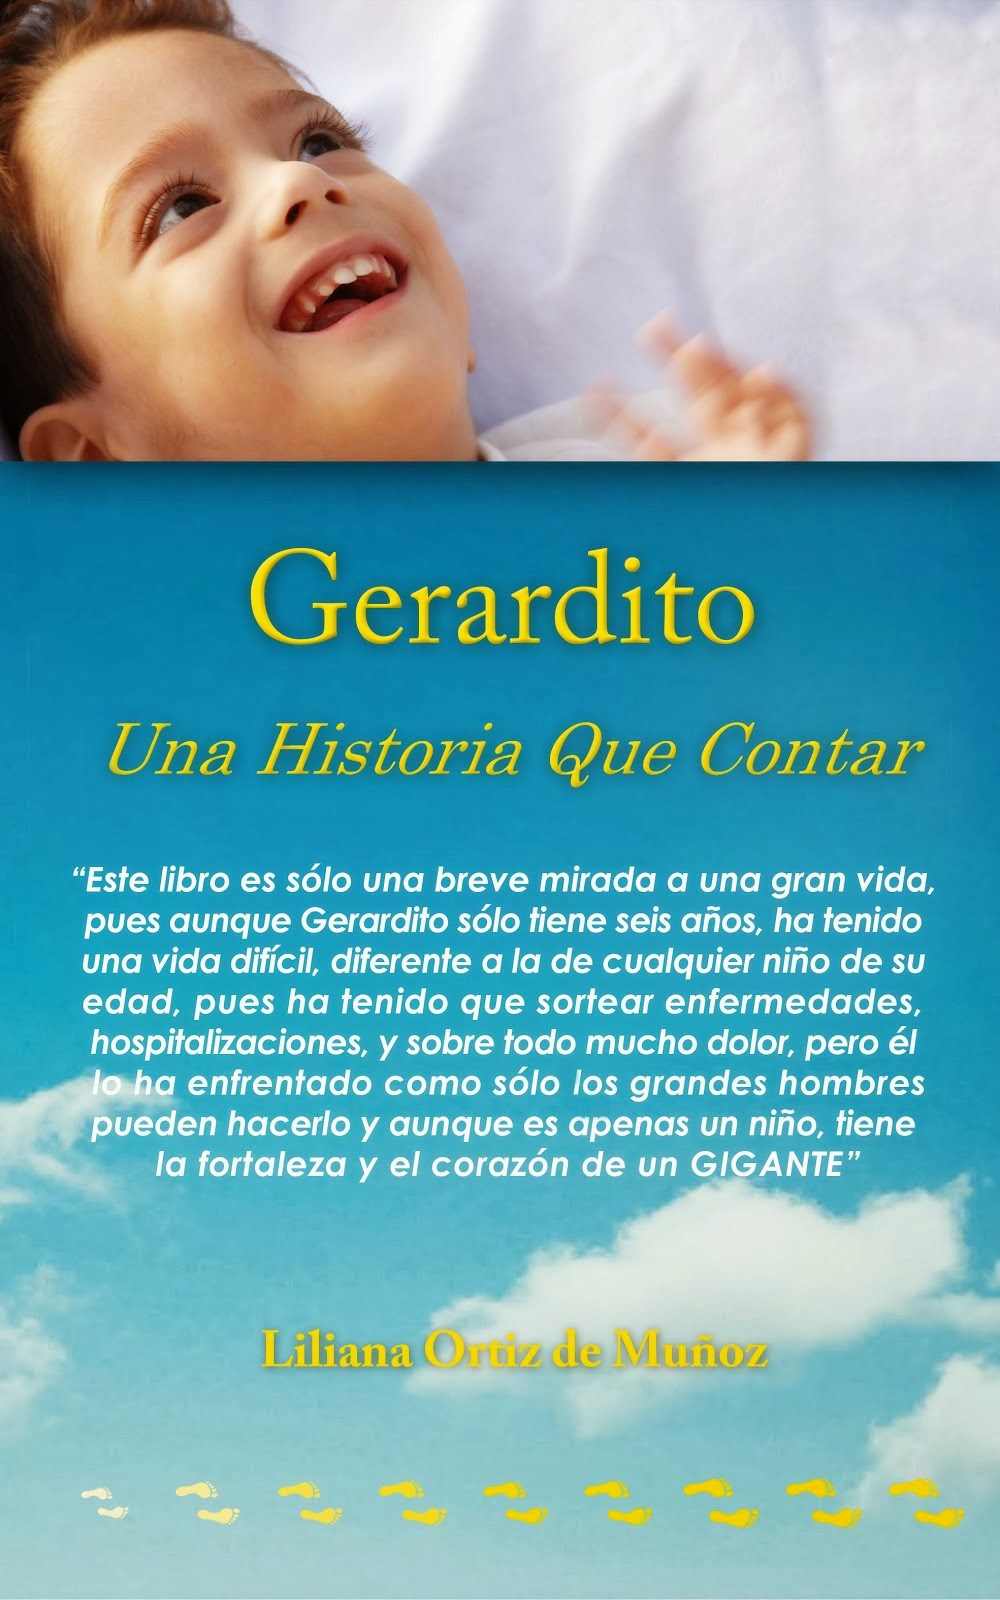 Gerardito, una historia que contar